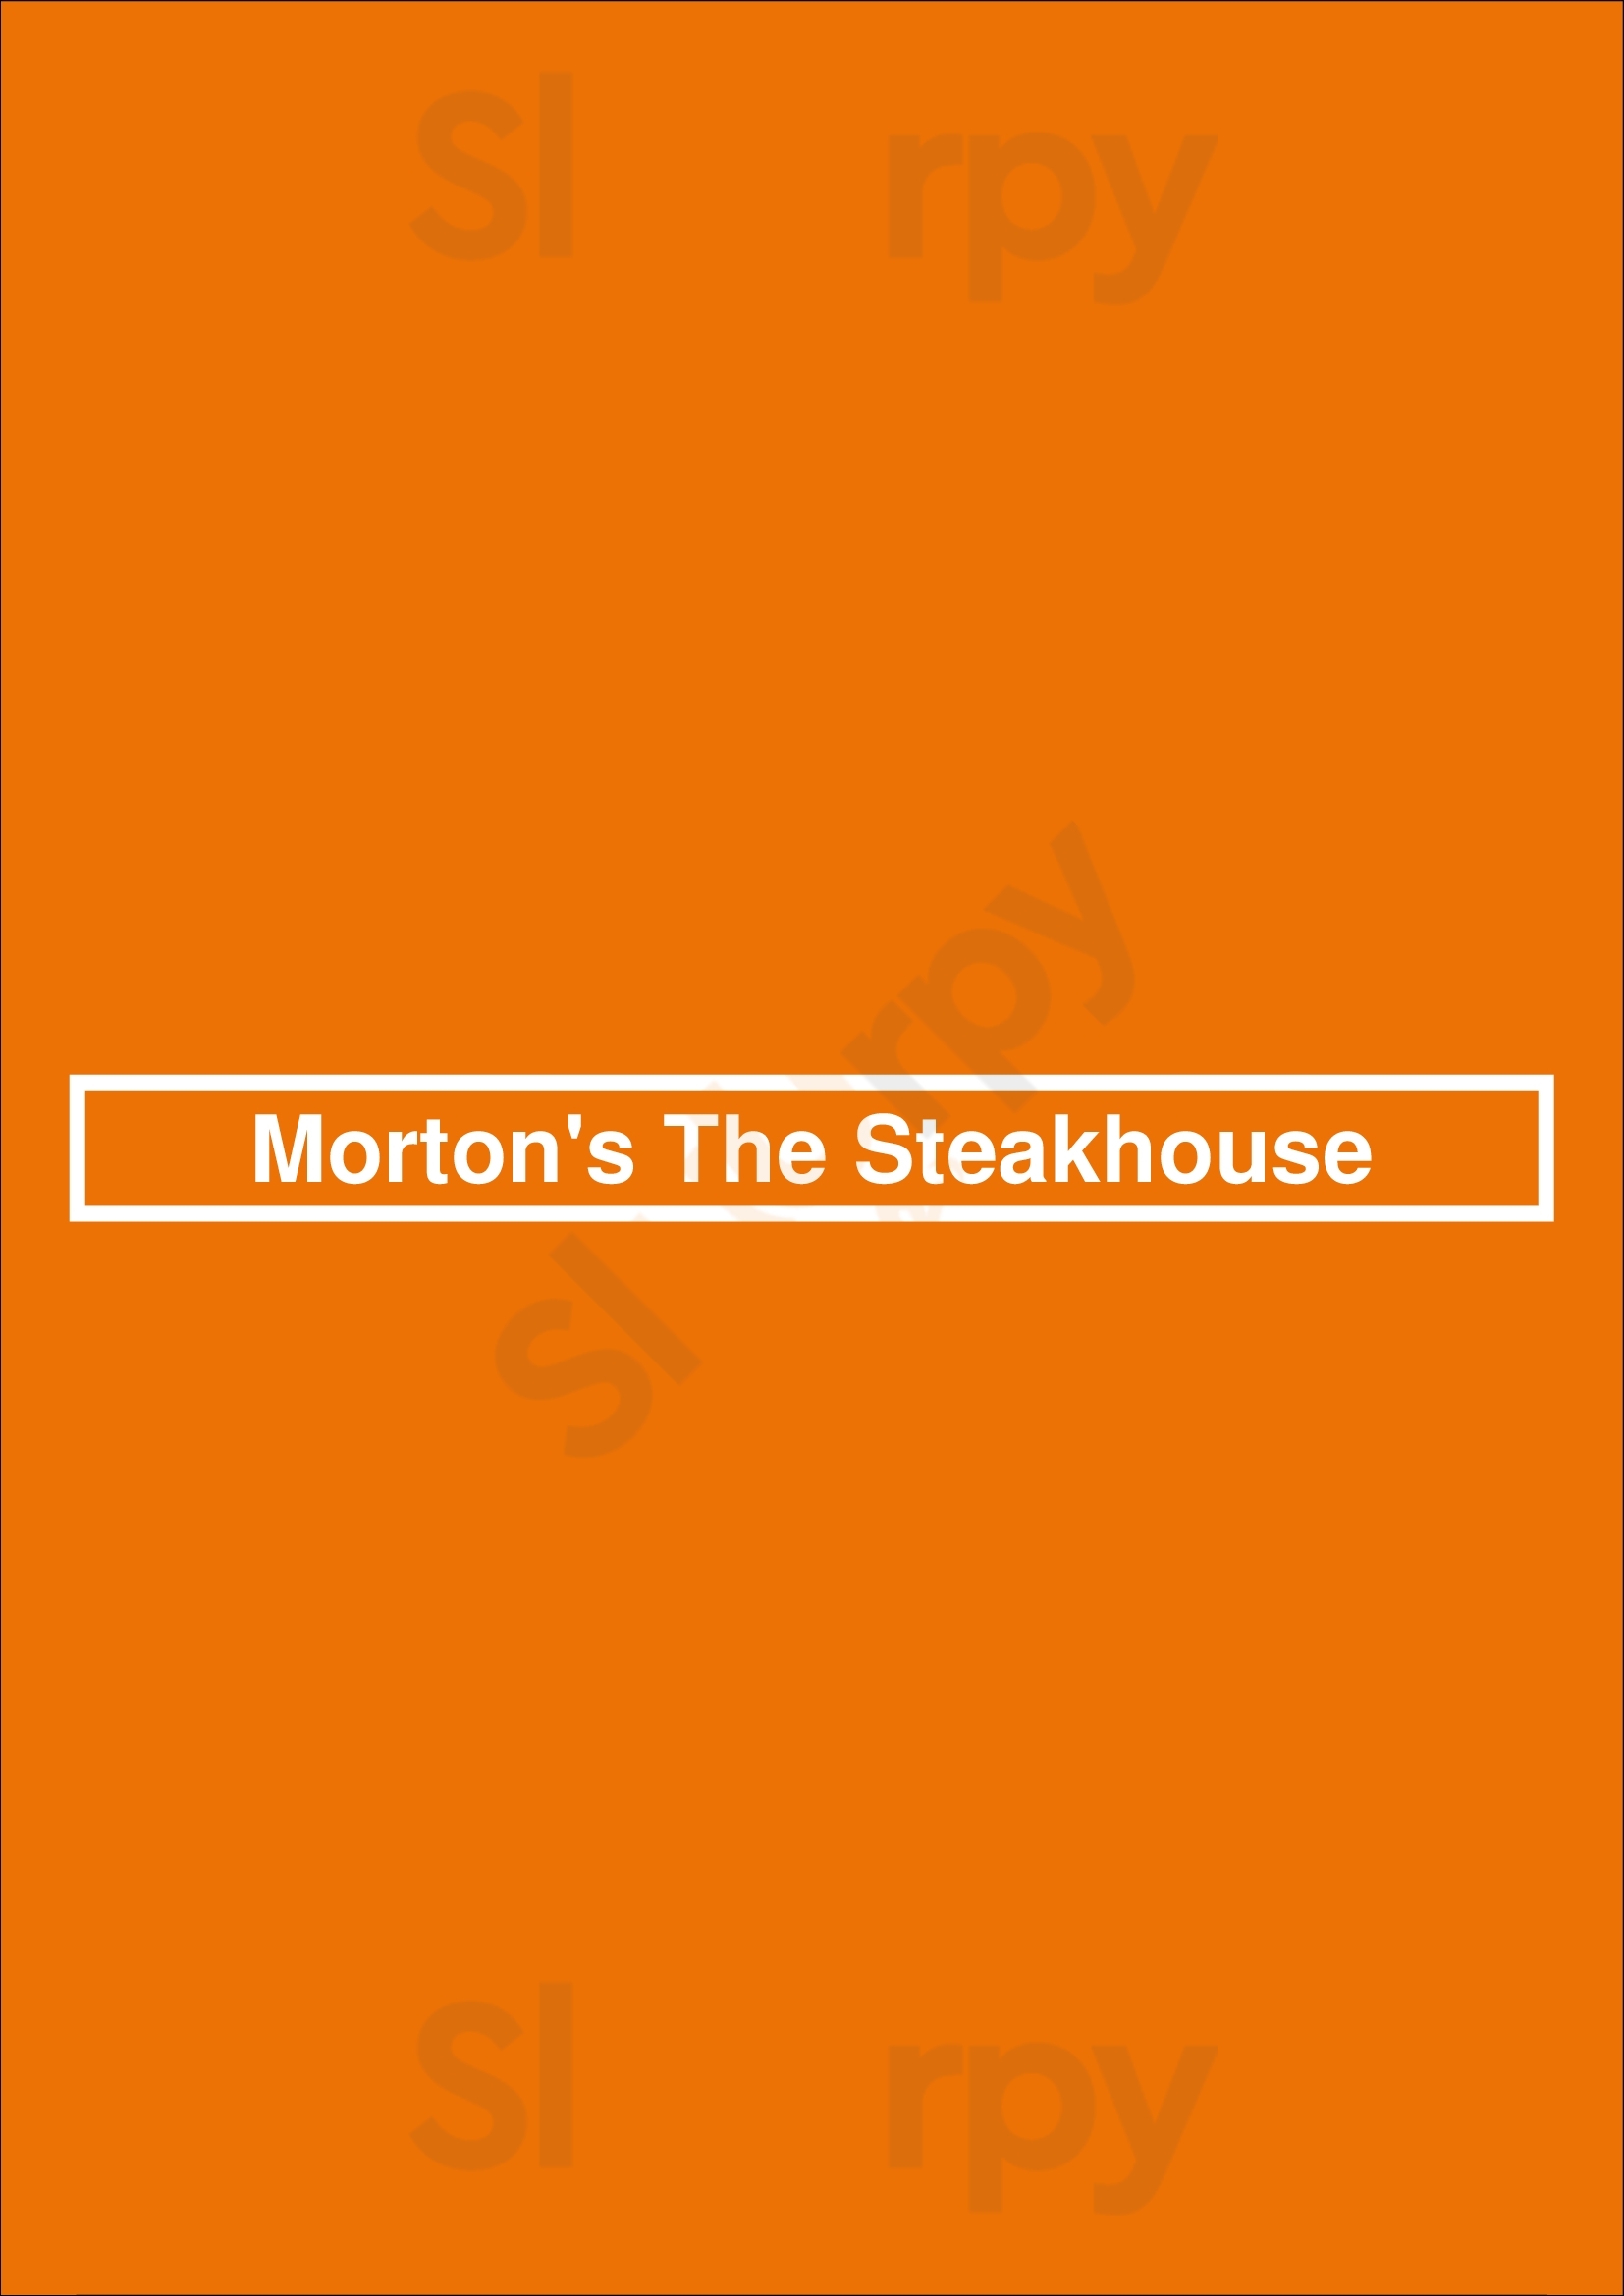 Morton's The Steakhouse Cincinnati Menu - 1